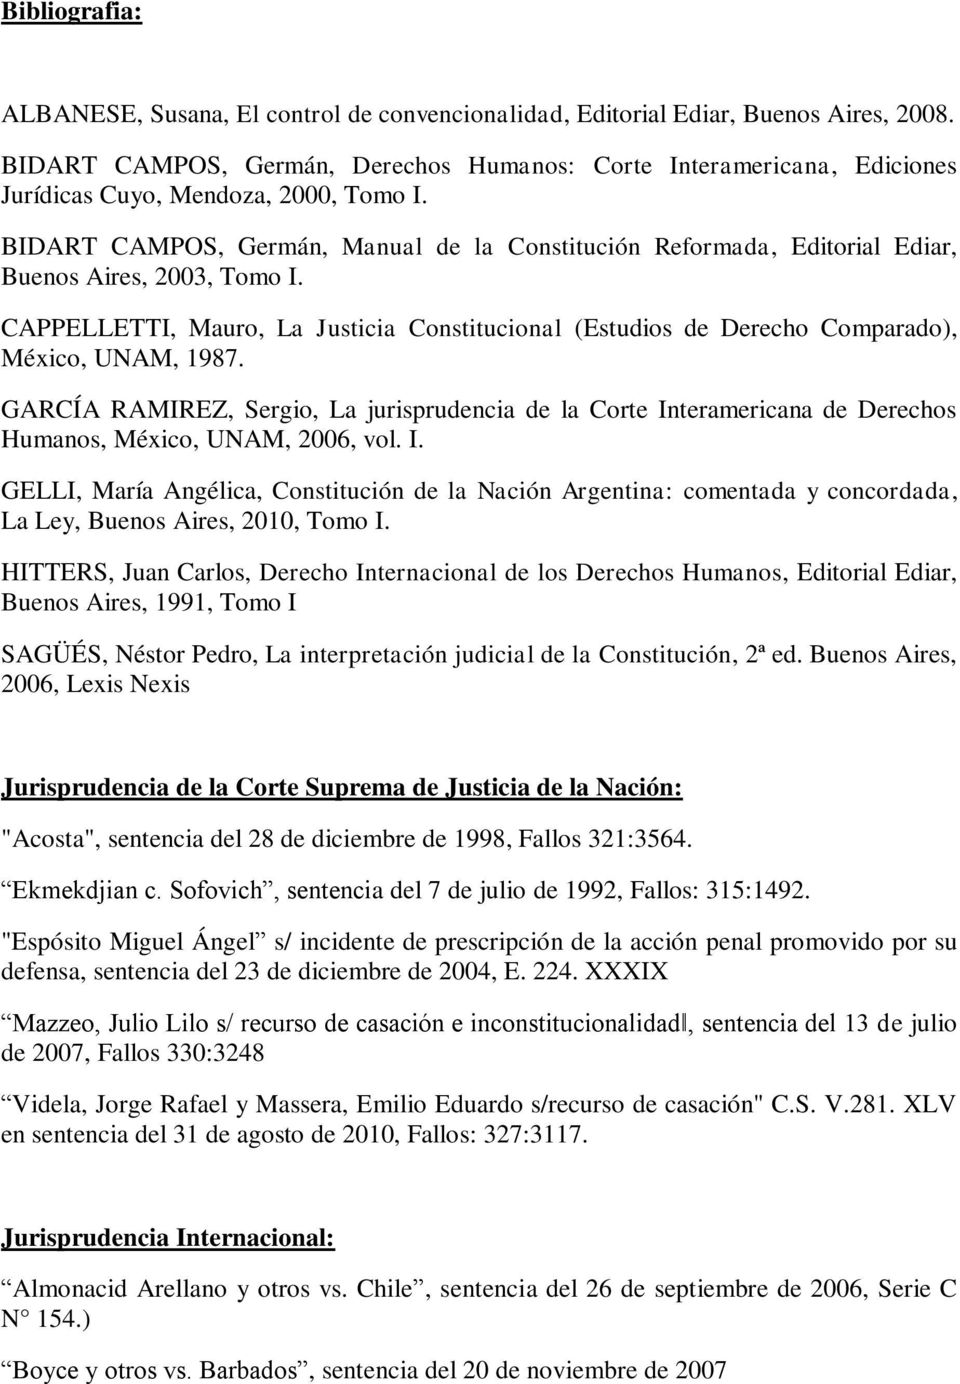 BIDART CAMPOS, Germán, Manual de la Constitución Reformada, Editorial Ediar, Buenos Aires, 2003, Tomo I.